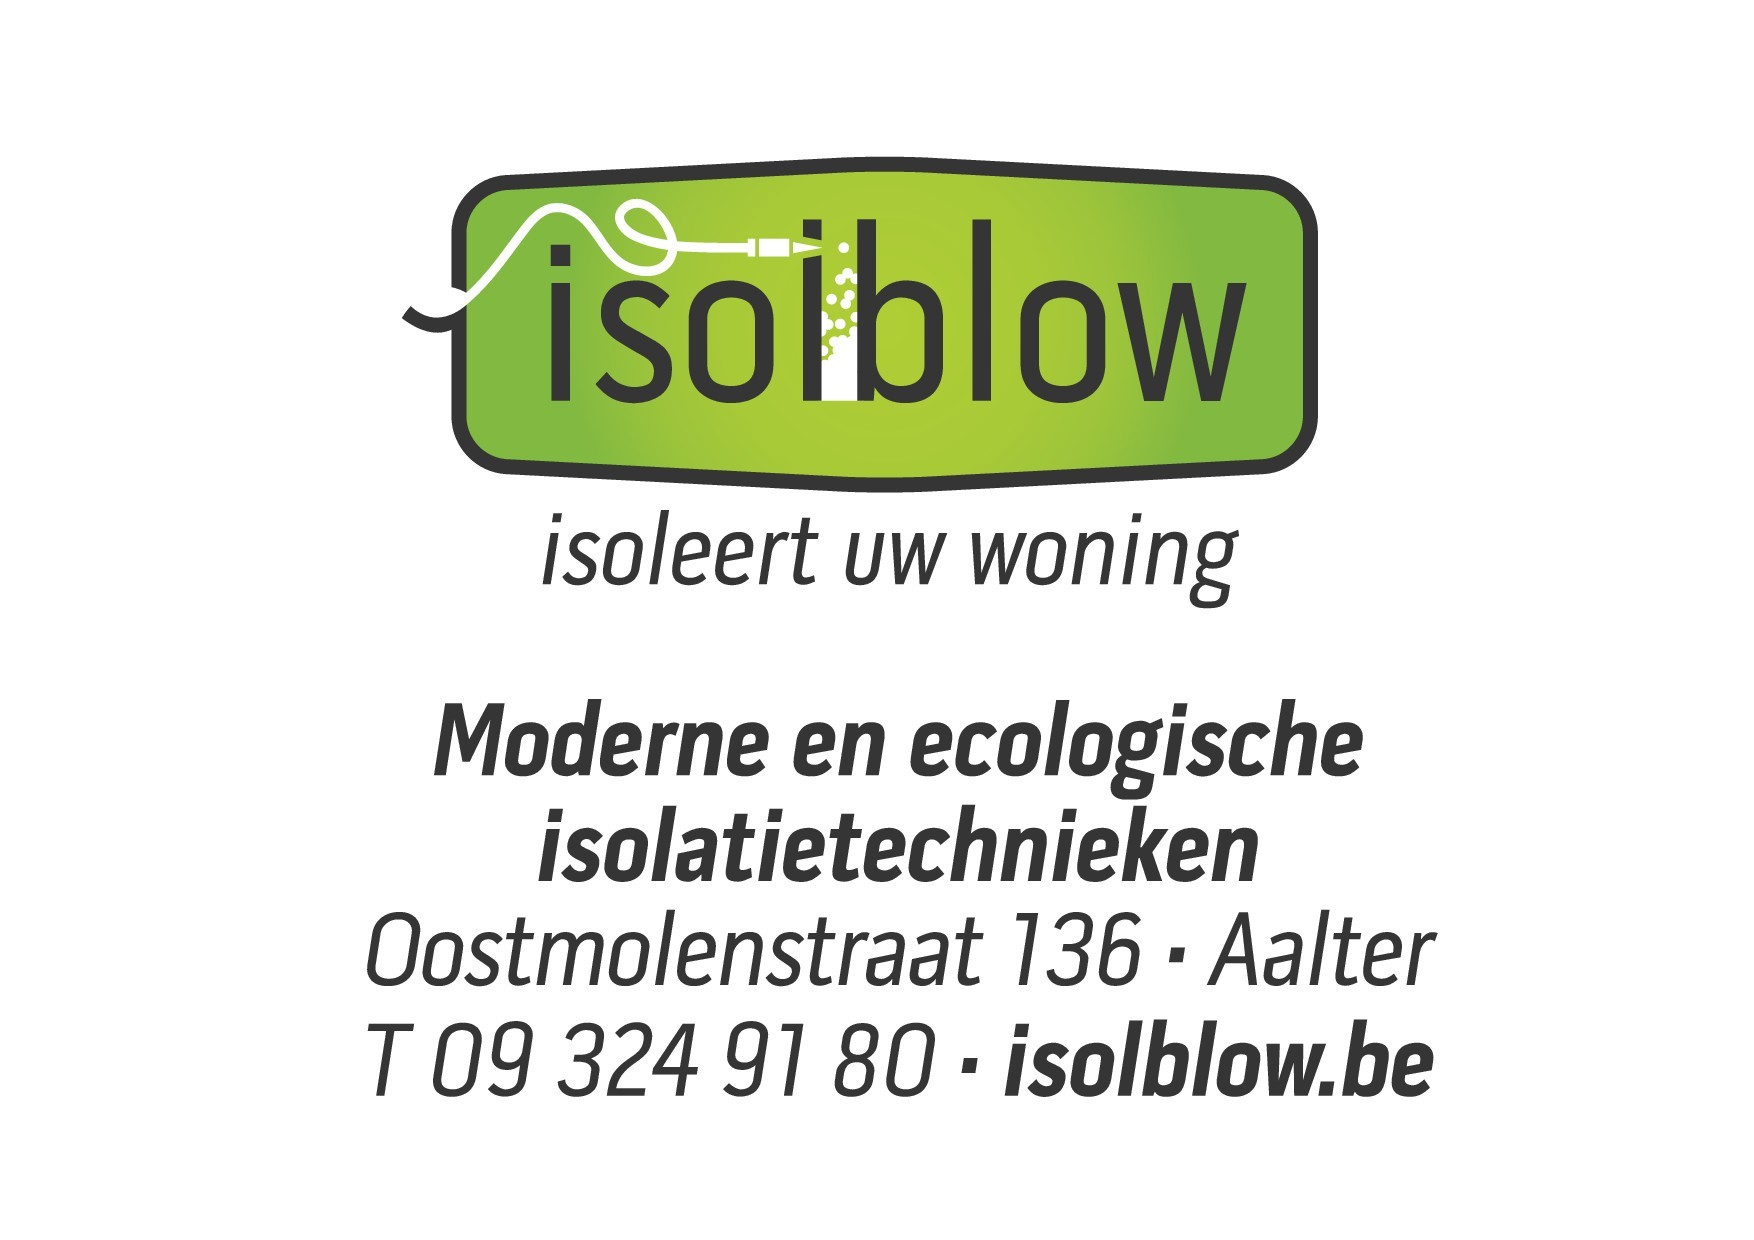 Isolblow-logo-adres_p001